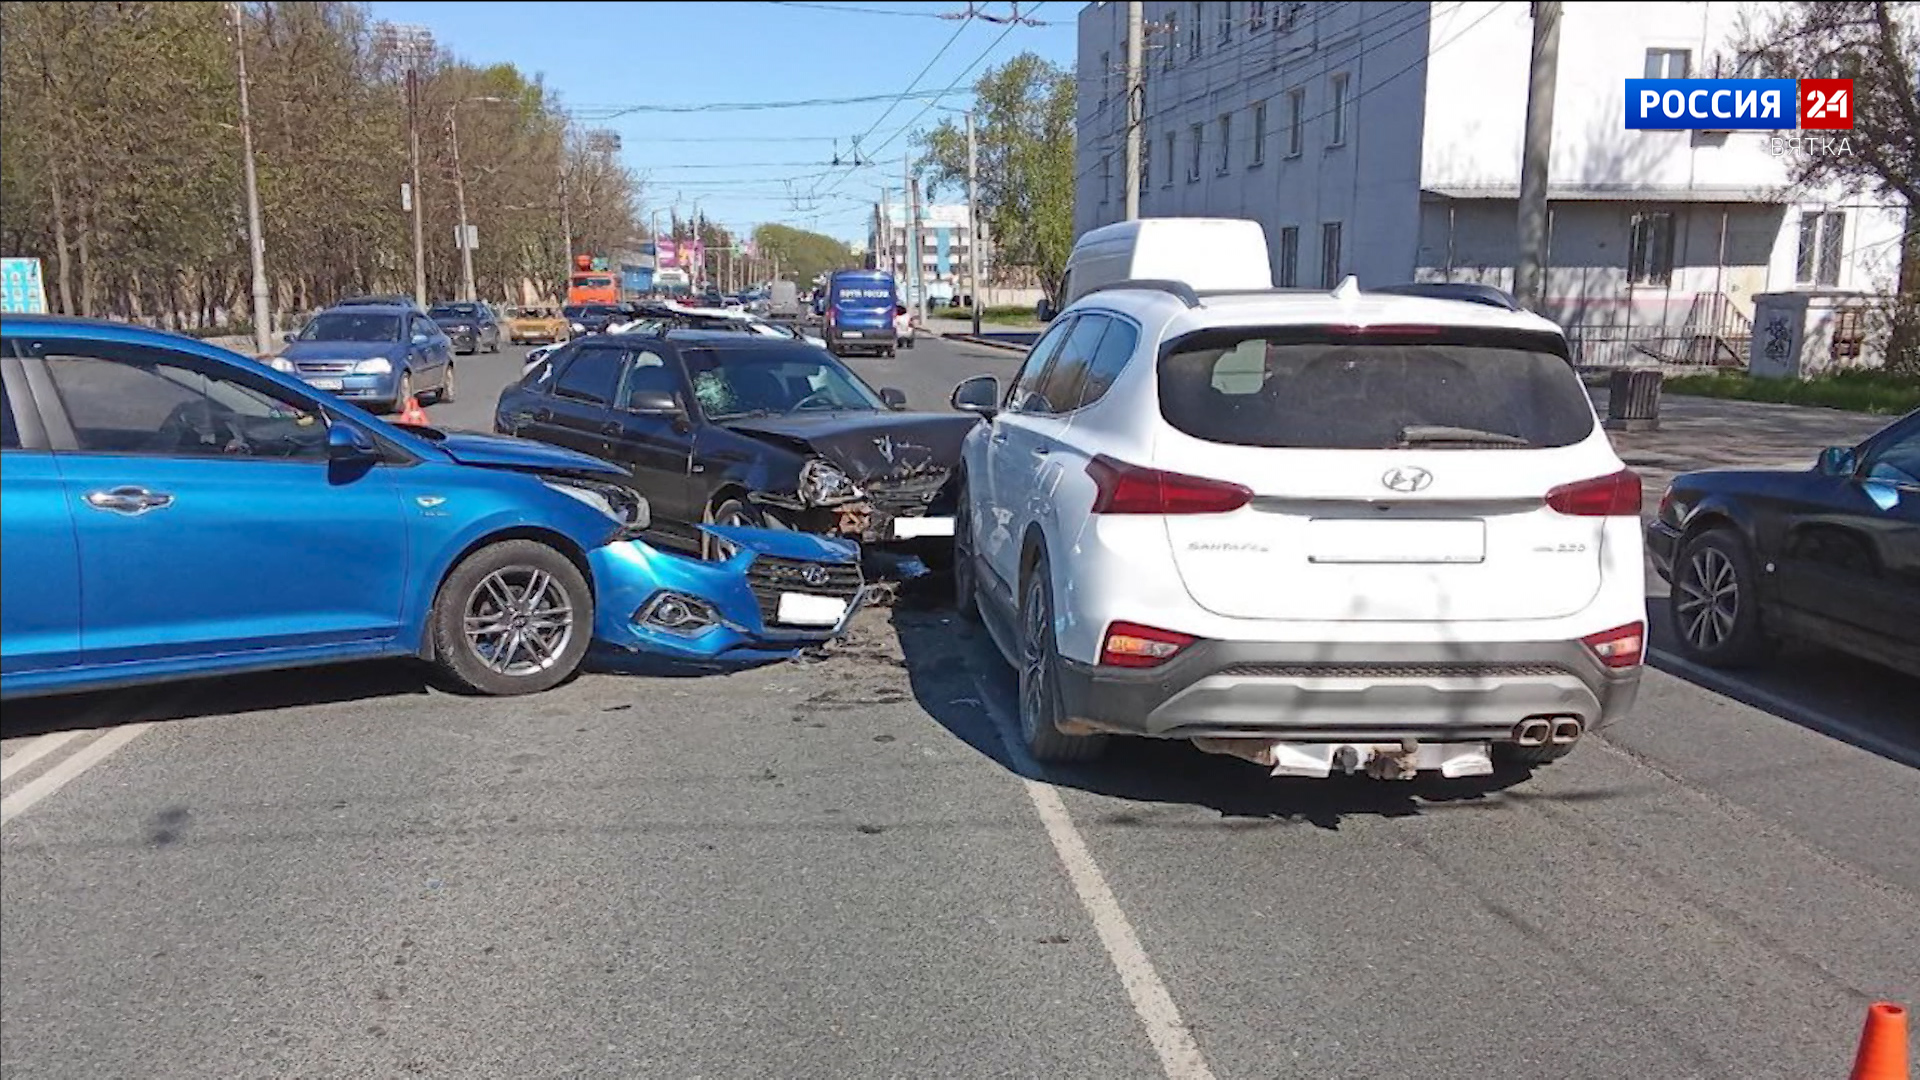 За сутки в ДТП на дорогах Кирова пострадали 4 человека